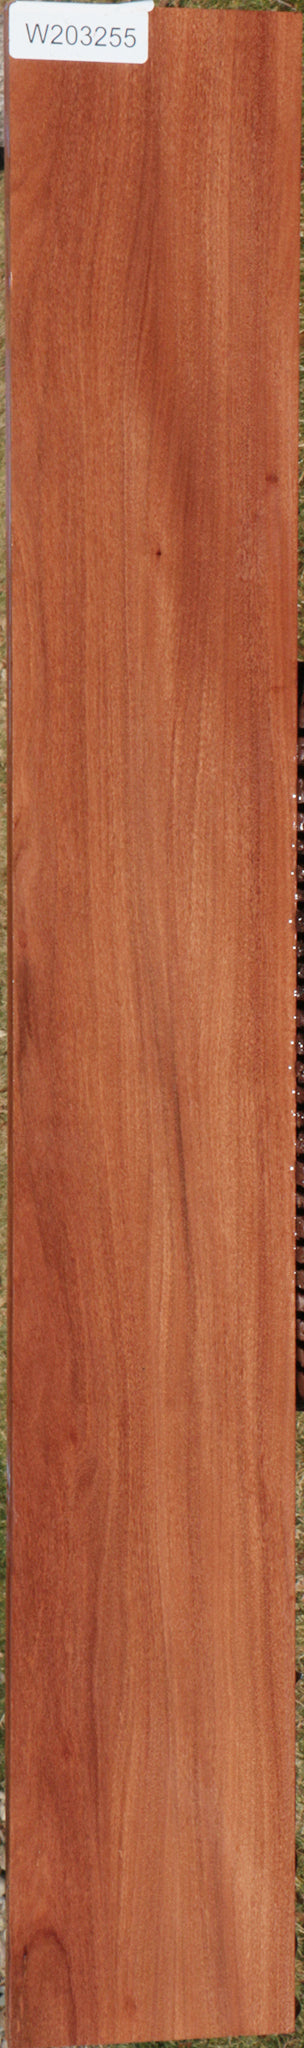 Brush Box Micro Lumber